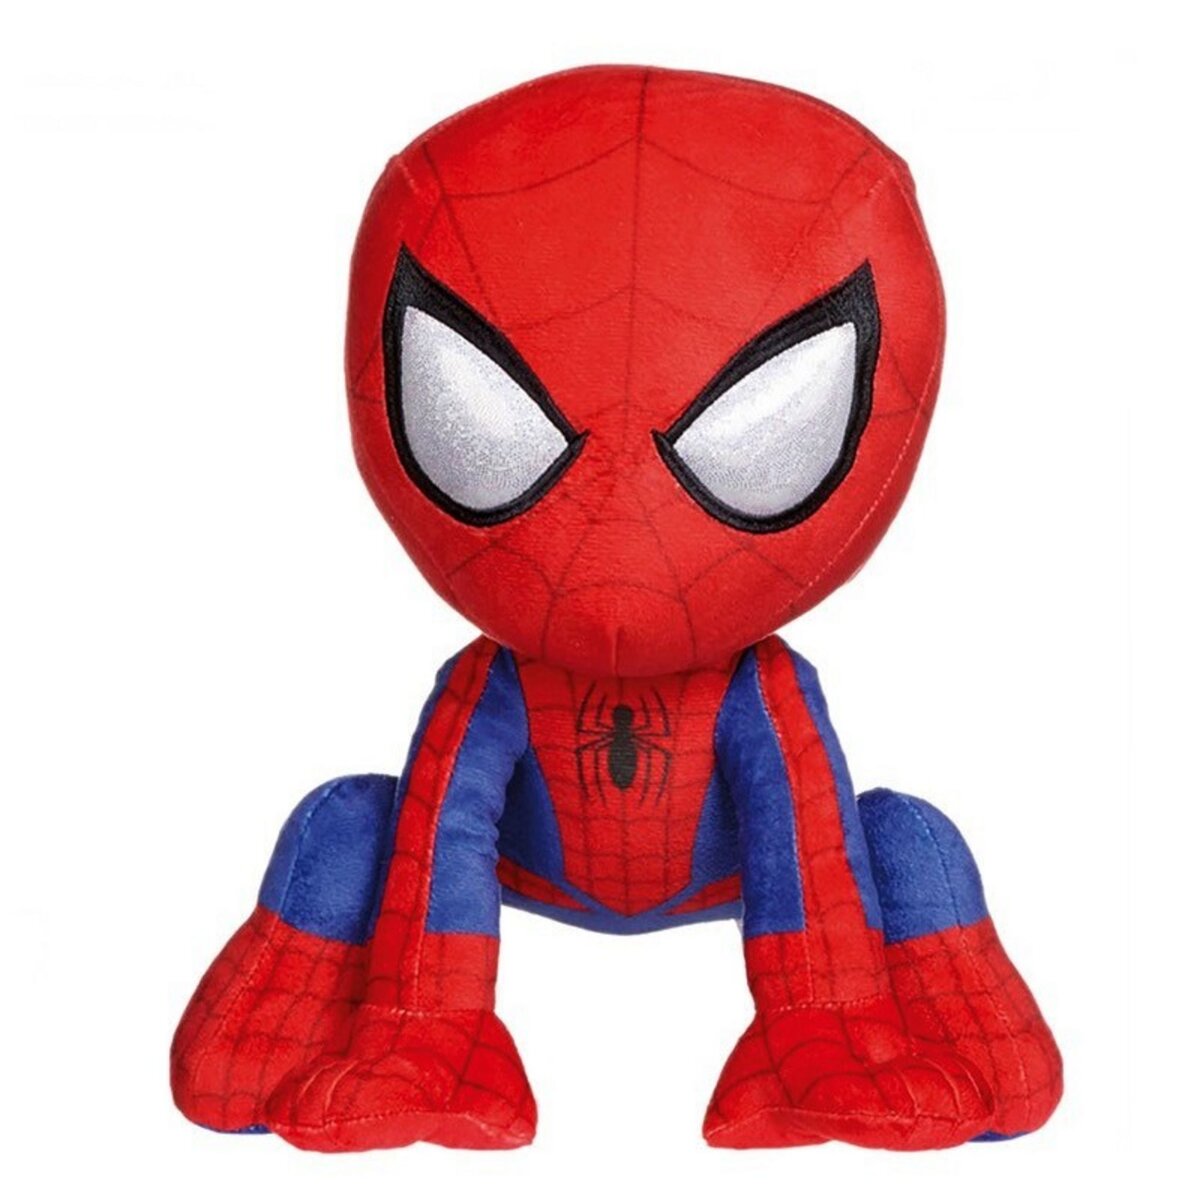  XXL Peluche Spiderman 53 cm geante Marvel